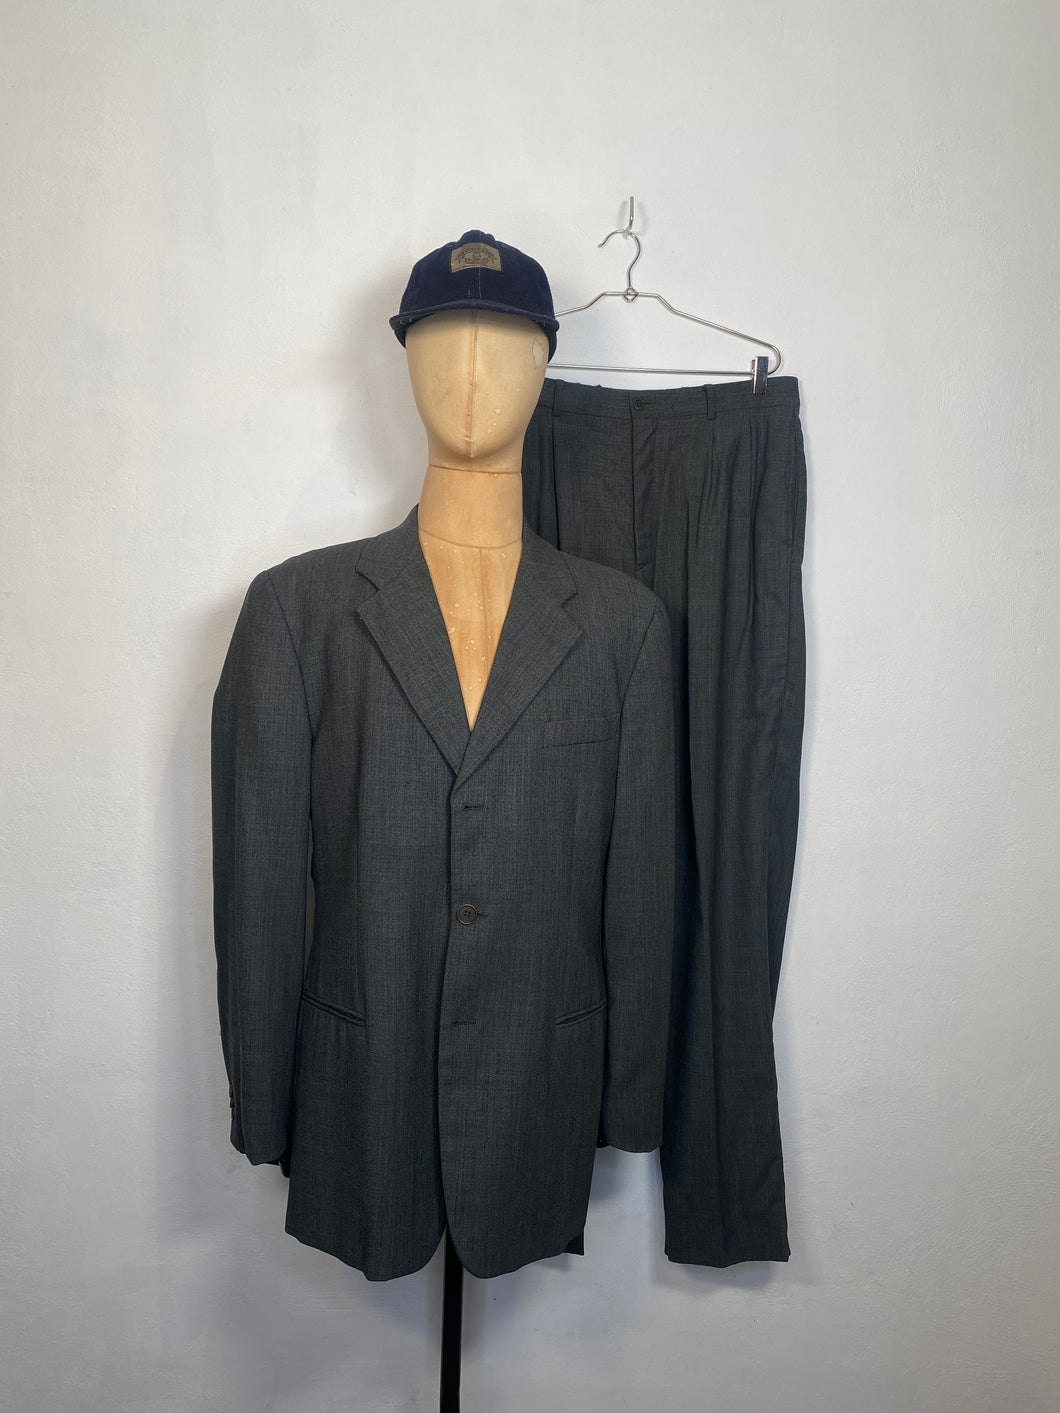 1993 Emporio Armani suit gray